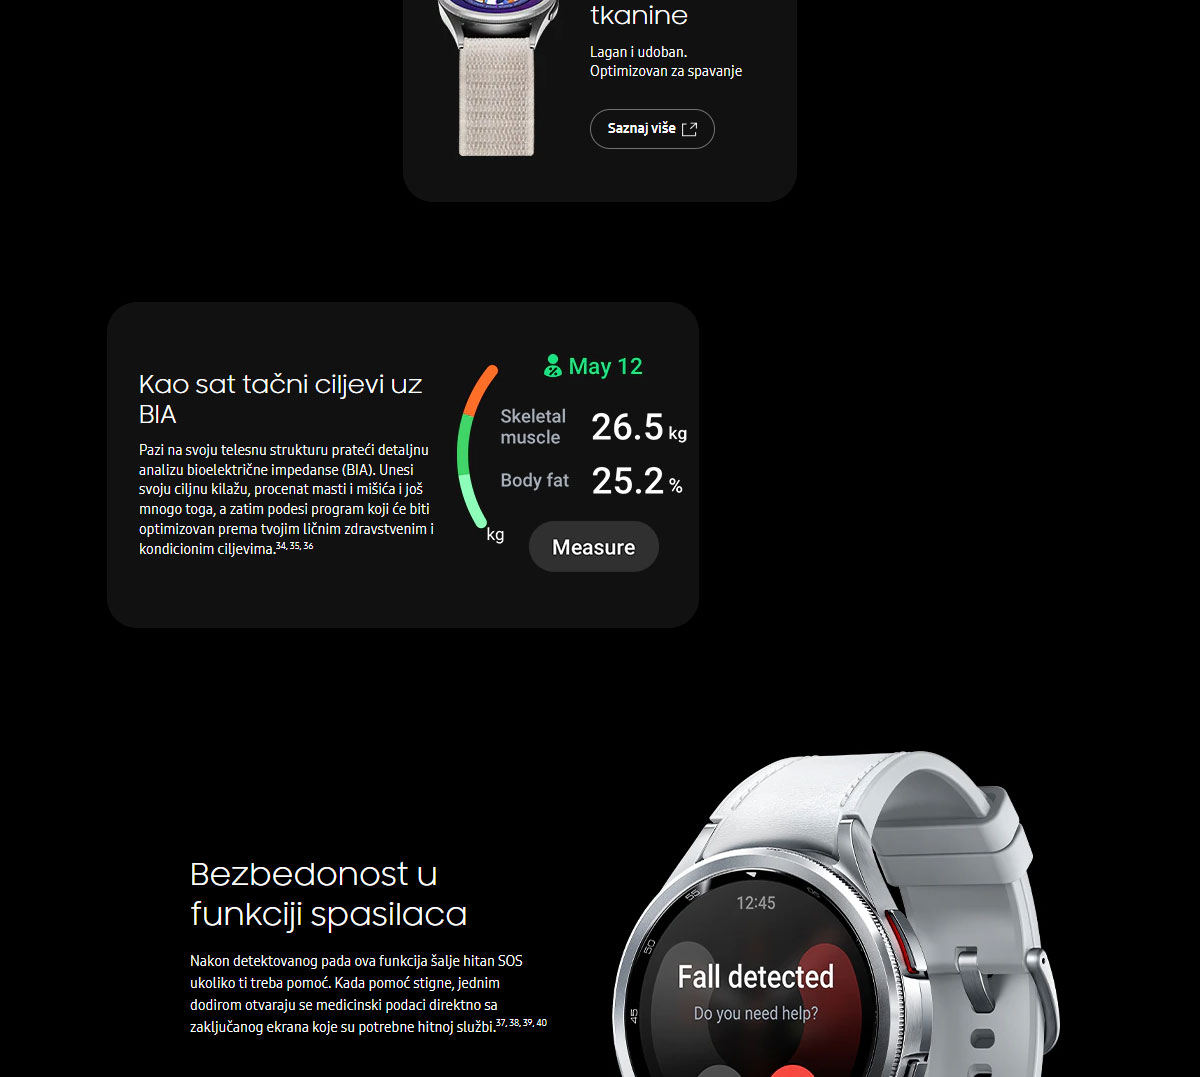 Samsung Galaxy Watch6 Classic